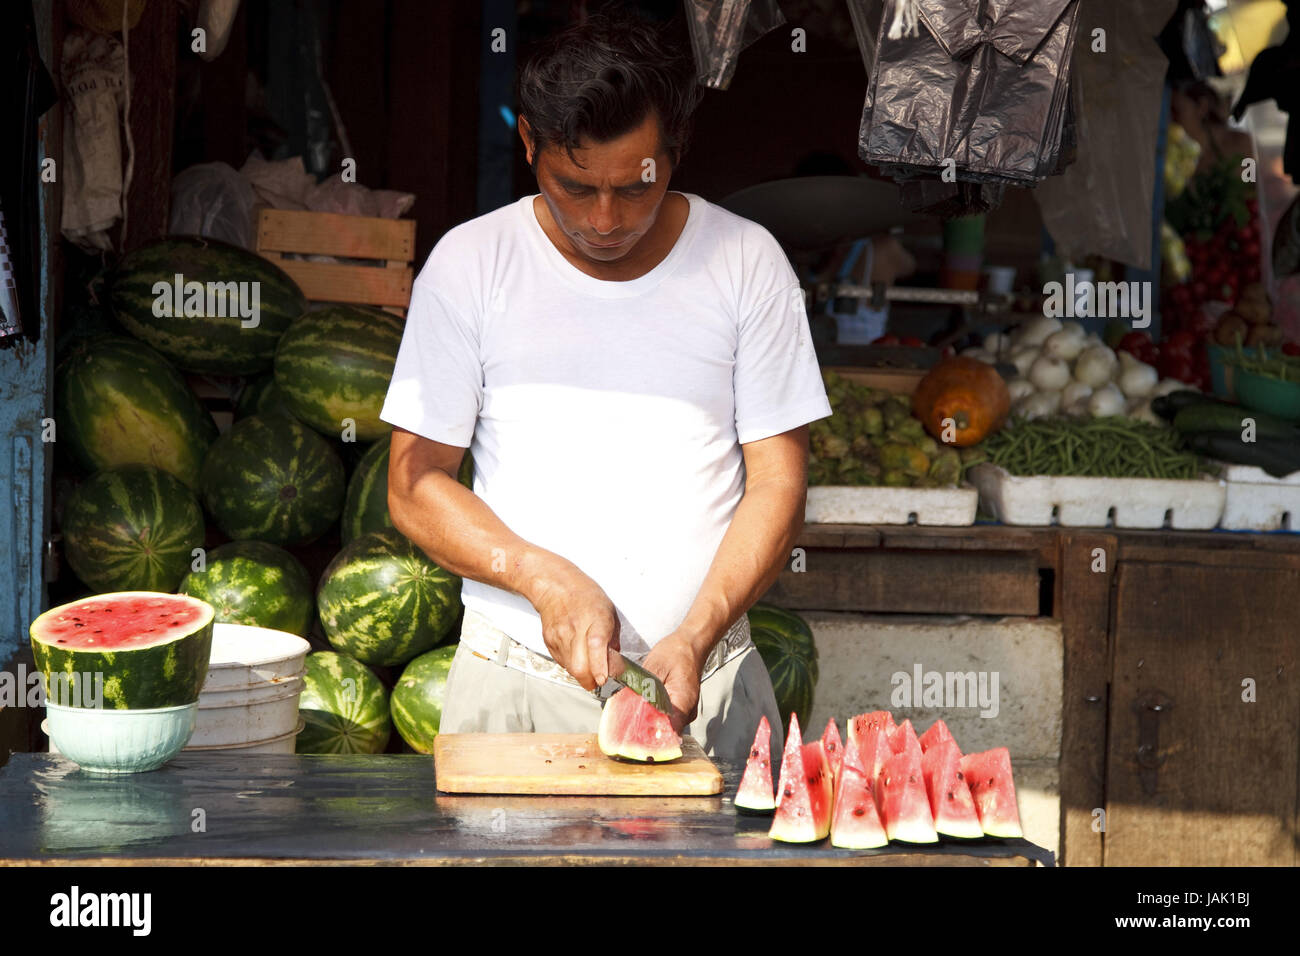 México,Chiapas,Ocosingo,mercado,hombre,melones,cortar,vender, Foto de stock